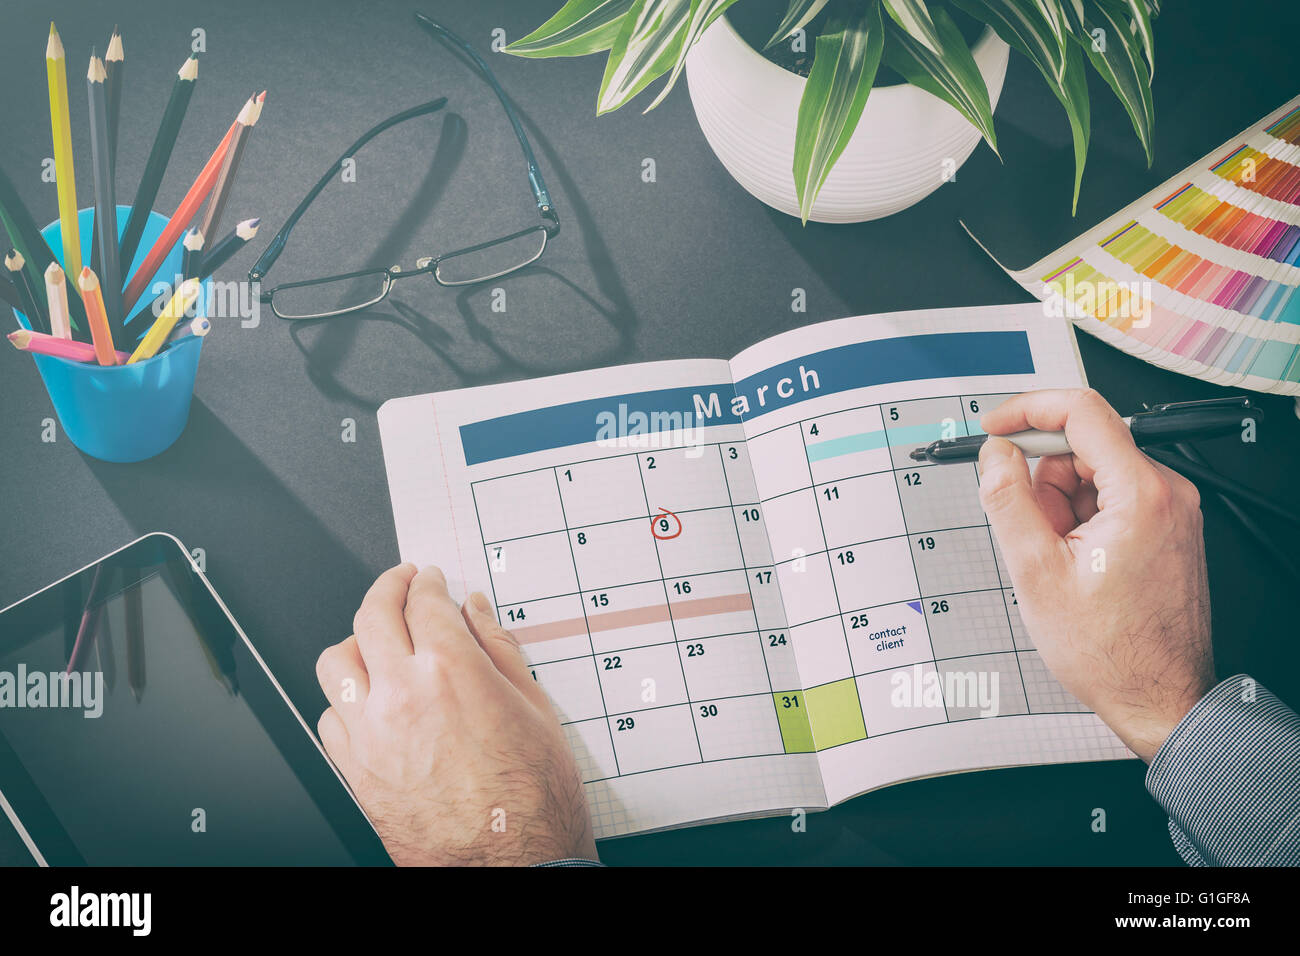 Kalender-Veranstaltungen-Plan-Planer-Organisation organisieren Stockfoto